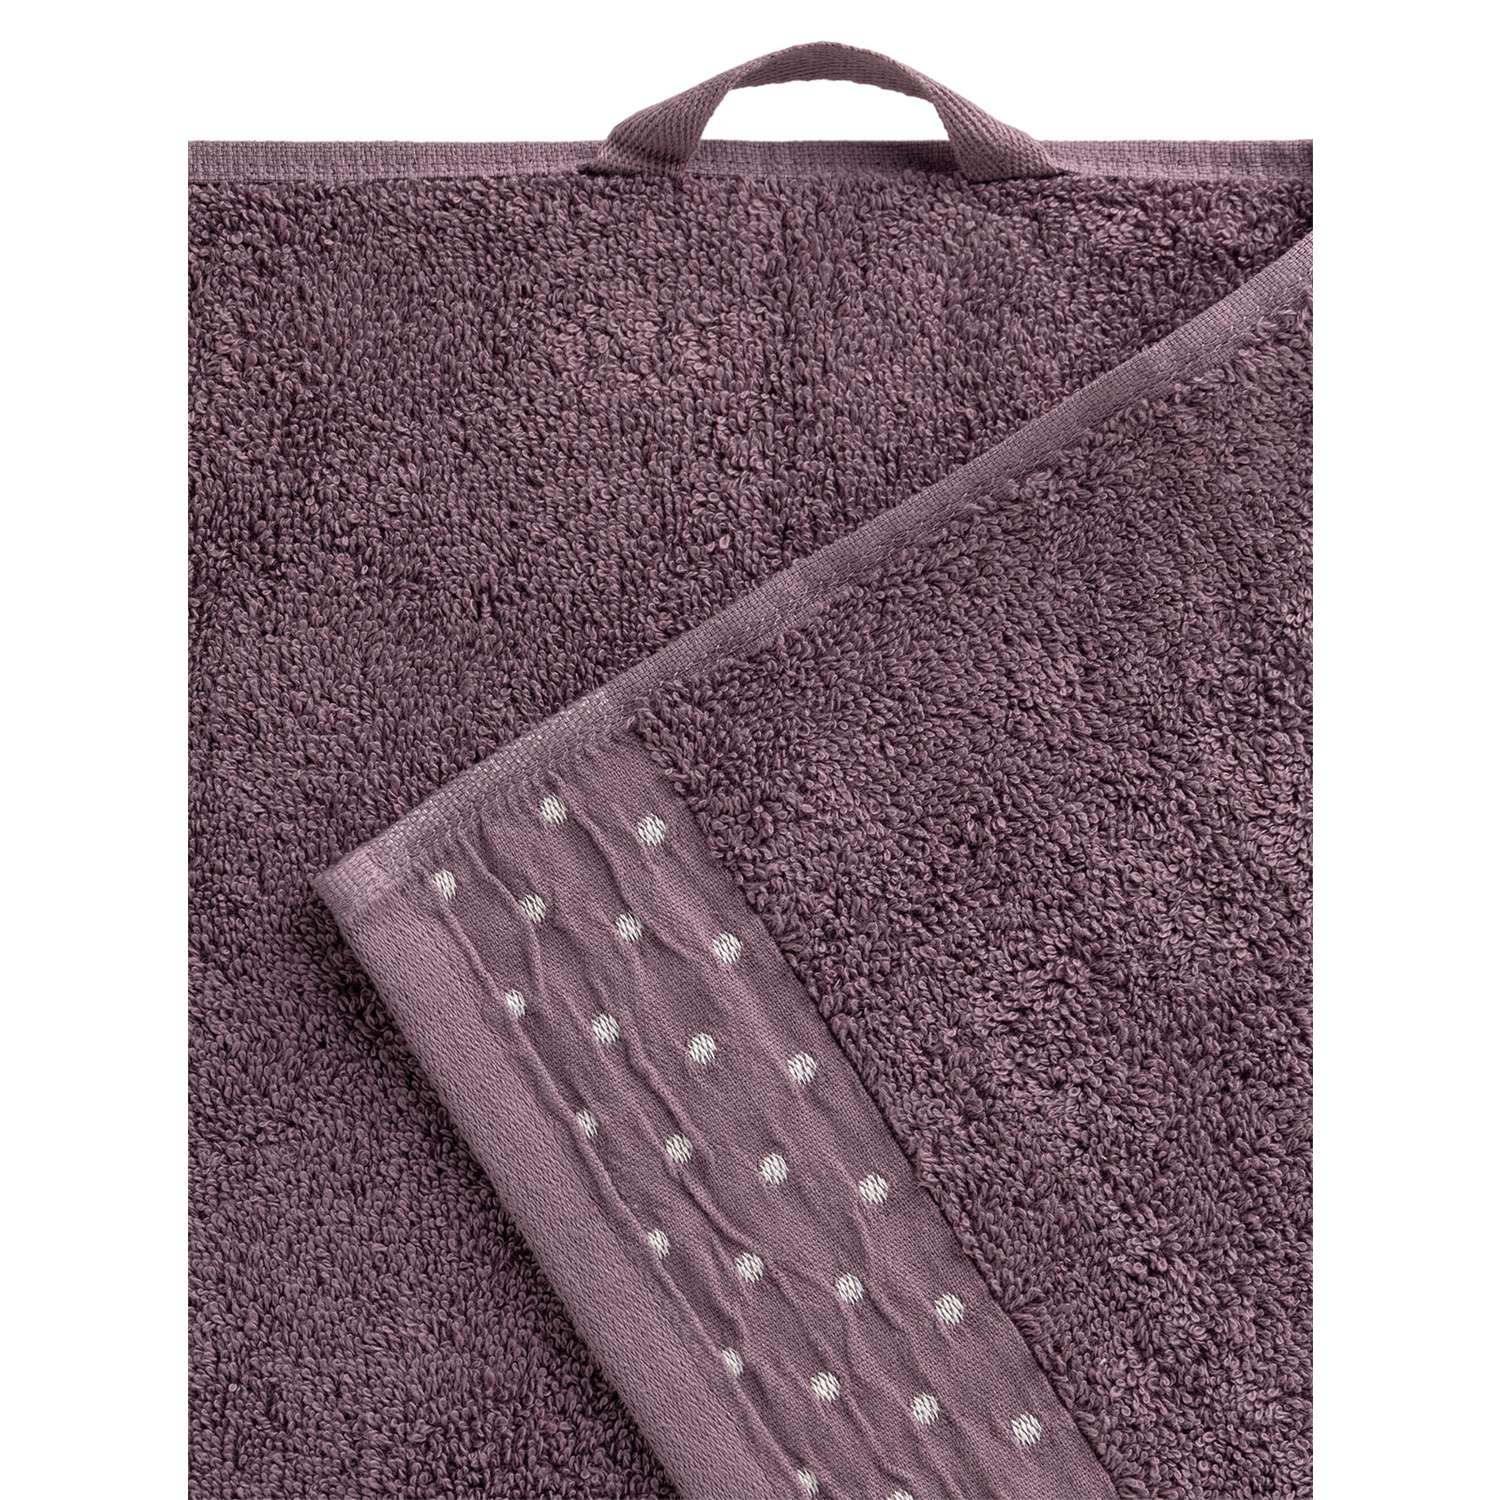 Полотенце махровое LUCKY с бордюром 35x70 см 100% хлопок лилово-коричневый D100312 - фото 3